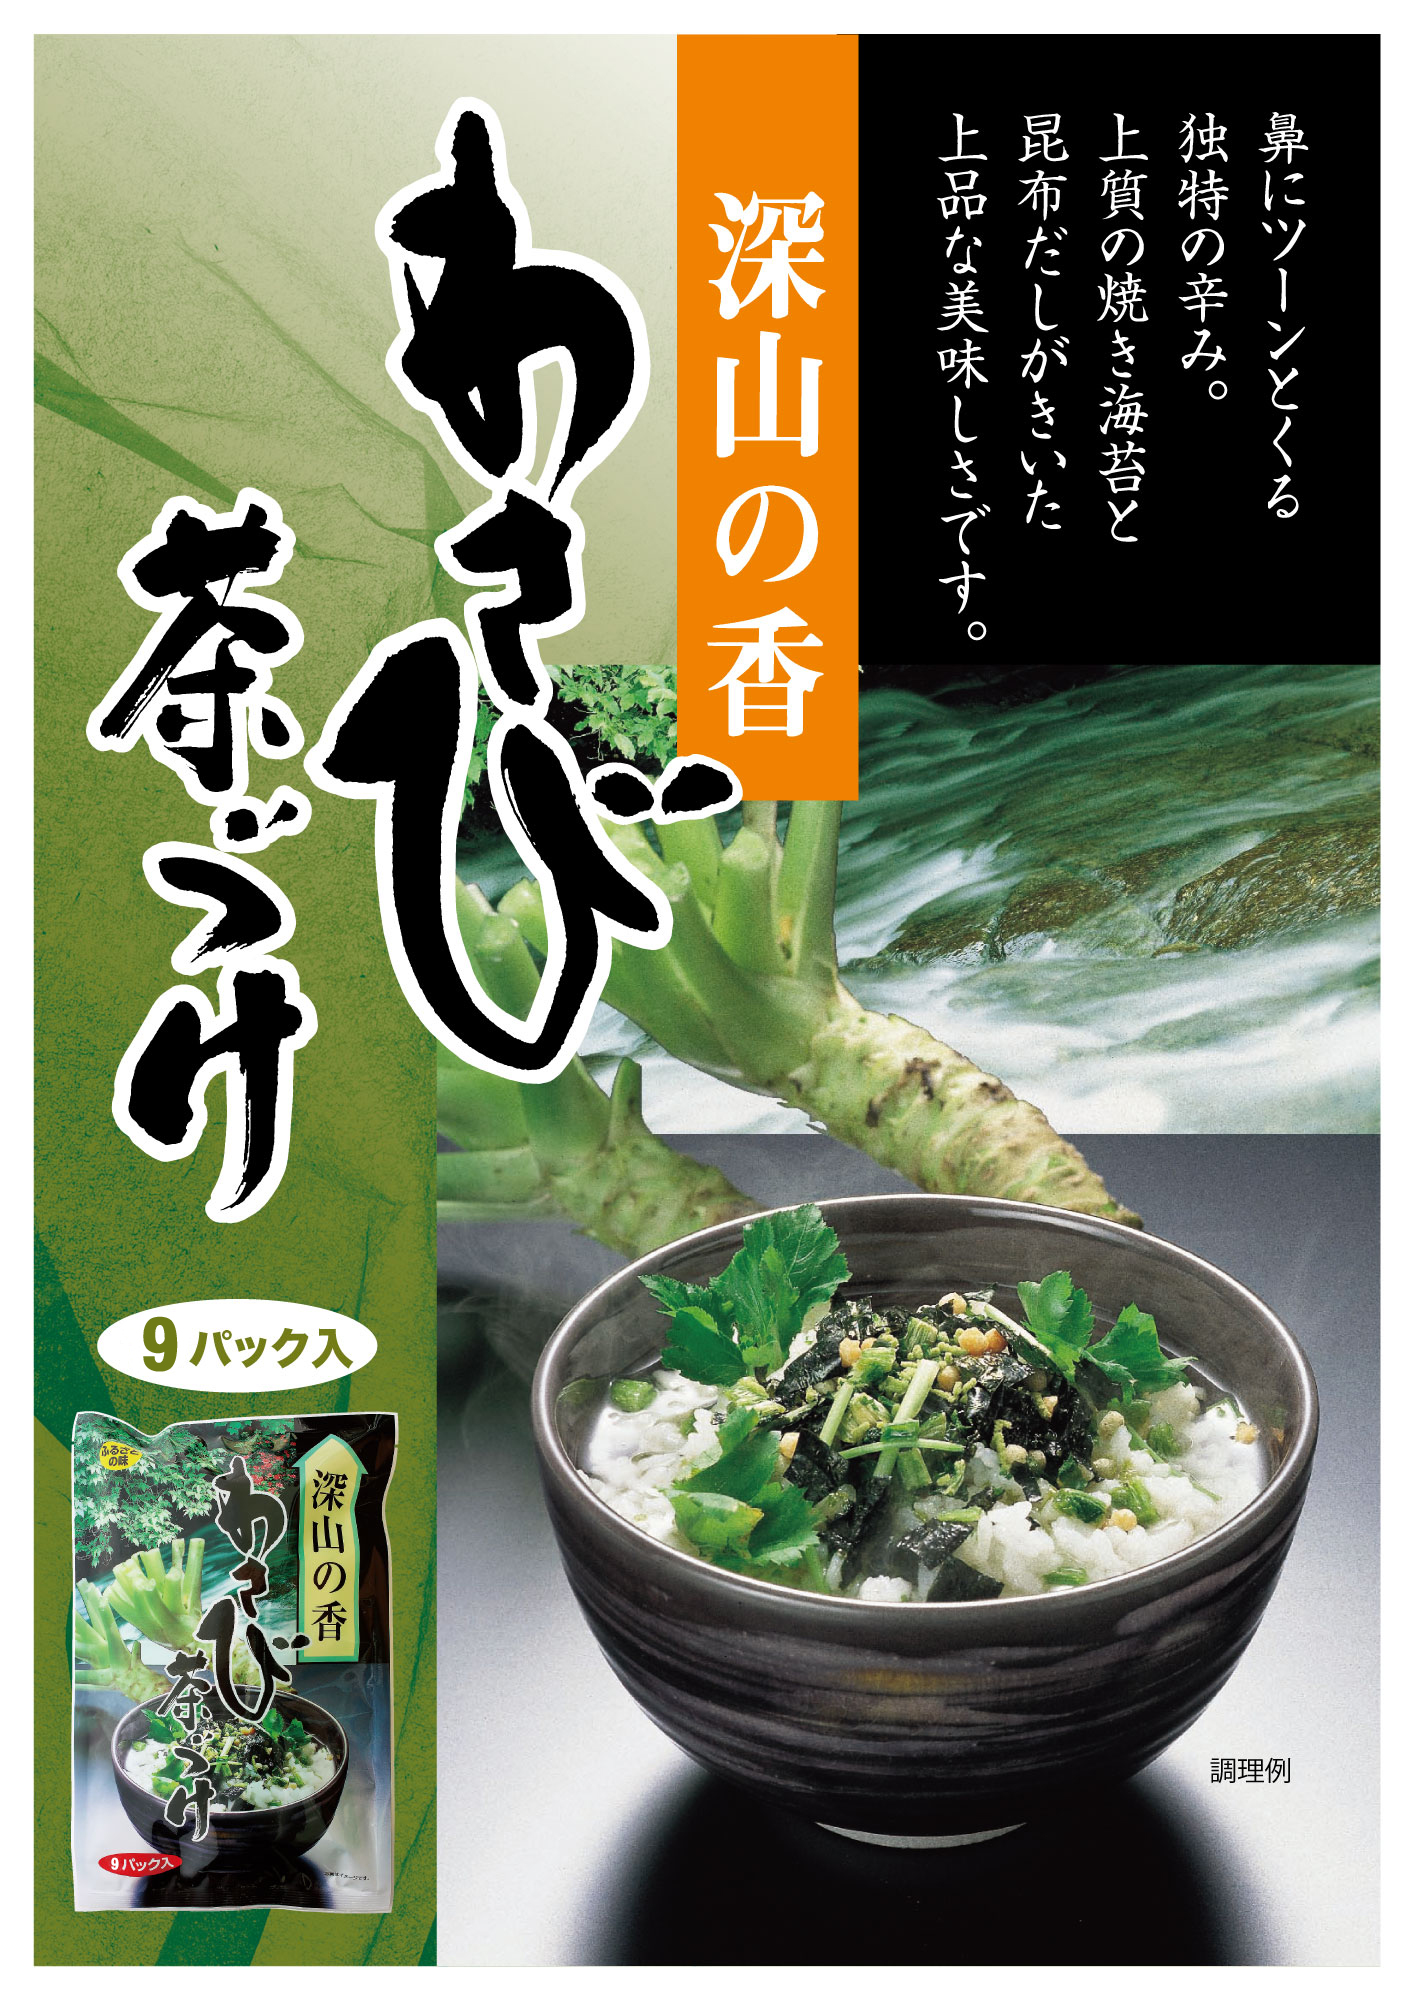  васаби чай ..1 пакет (6g×9 пакет )to-no- Tokai сельское хозяйство производство специальный отбор чай .. васаби чай ... элемент Отядзукэ гора . чай .. приправа фурикакэ рисовый шарик онигири васаби чай ..